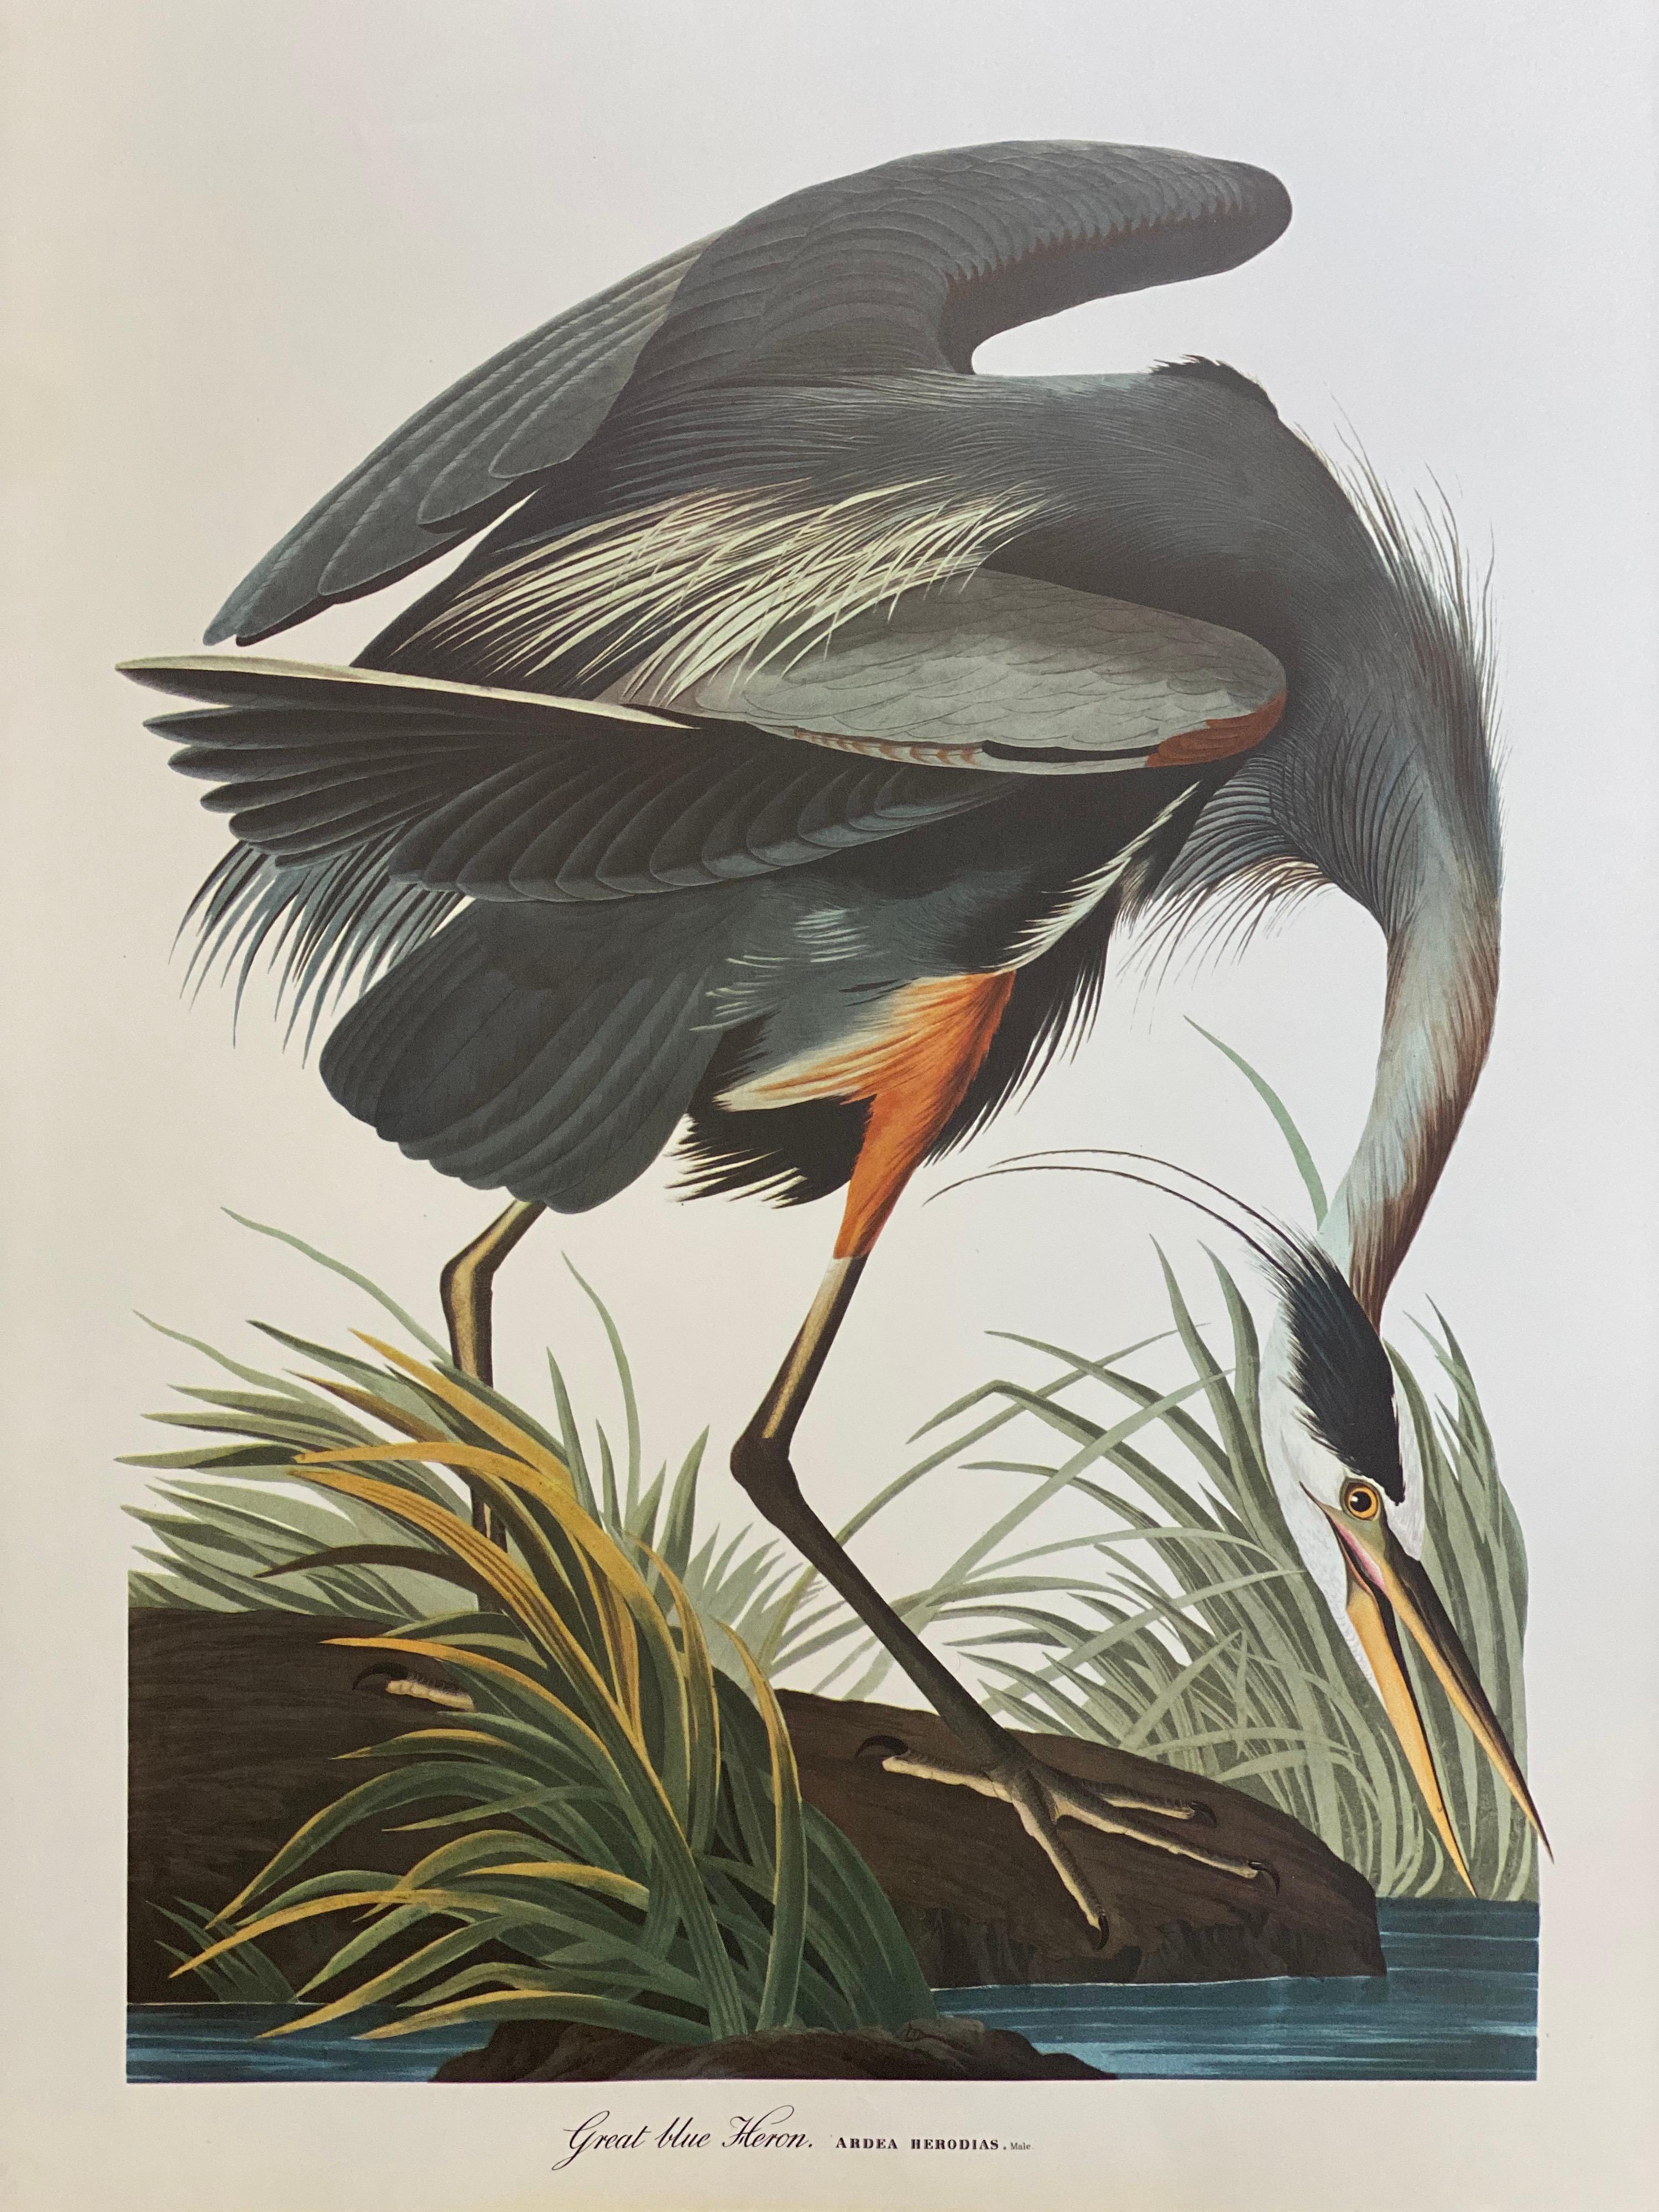 Impression classique d'oiseaux, 
d'après John James Audubon, 
imprimé par Harry N. Abrams, Publishers, New York
non encadré, 17 x 14 pouces impression couleur sur papier
État : très bon
Provenance : d'un collectionneur privé ici au Royaume-Uni.